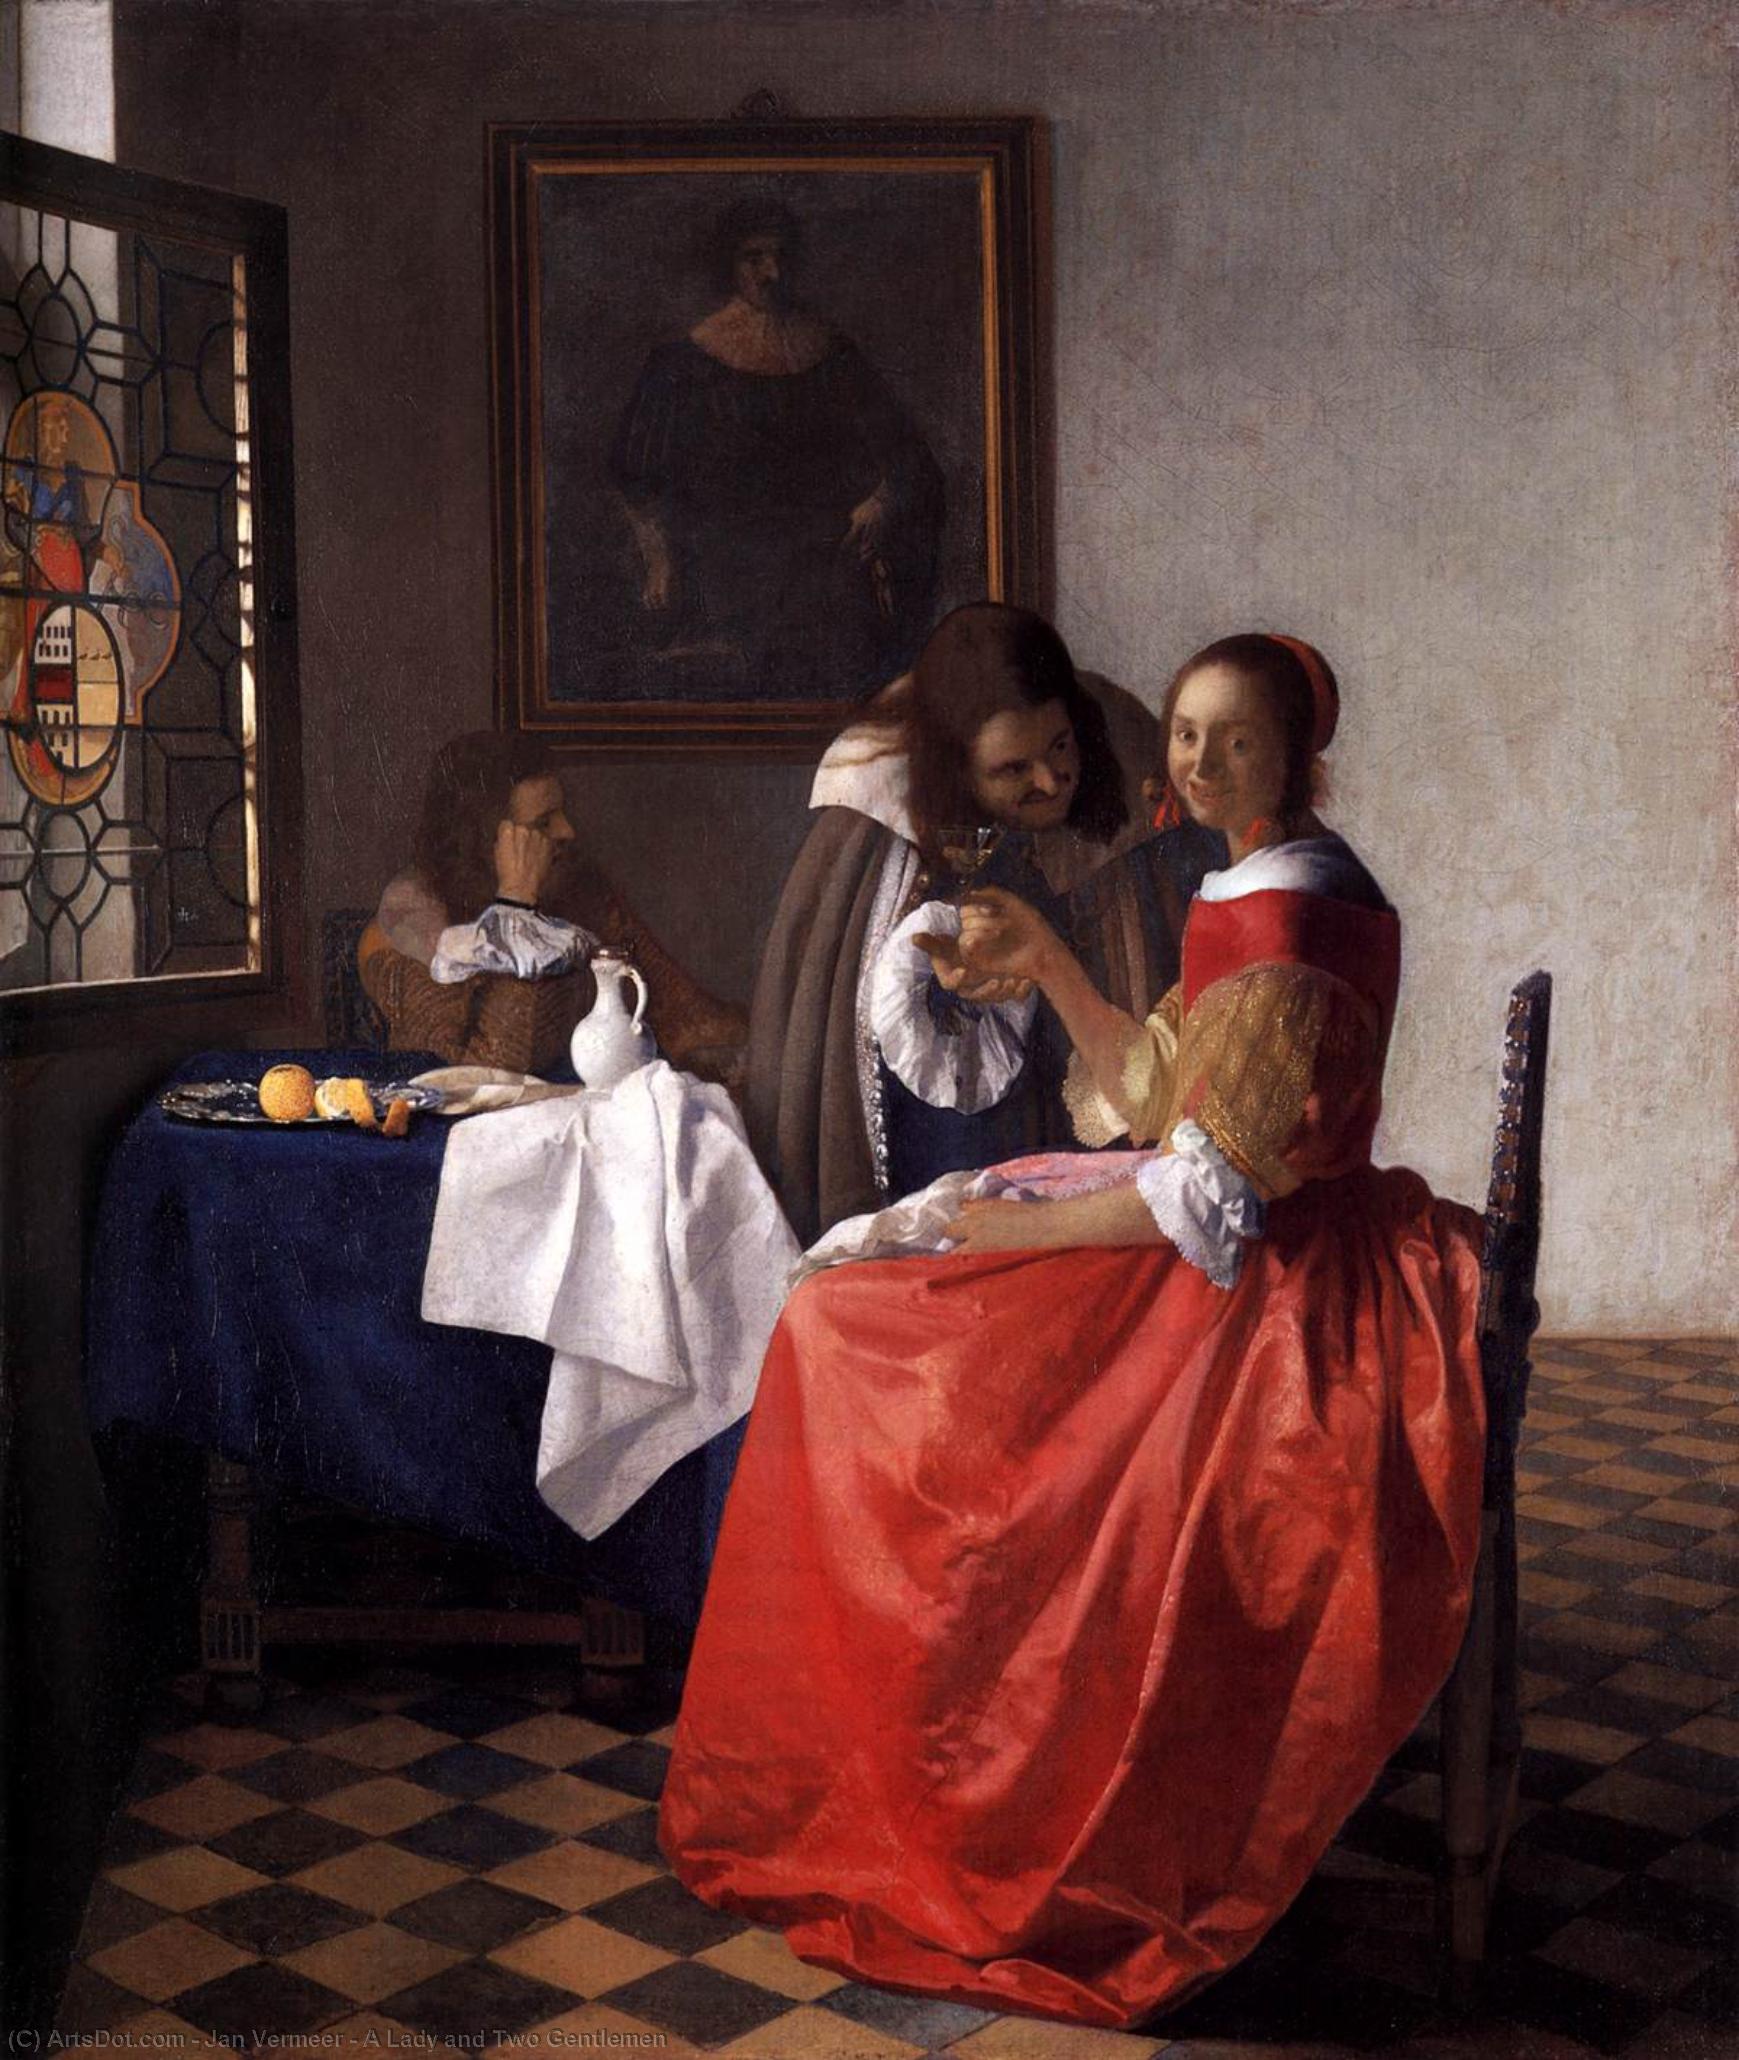 WikiOO.org - אנציקלופדיה לאמנויות יפות - ציור, יצירות אמנות Jan Vermeer - A Lady and Two Gentlemen